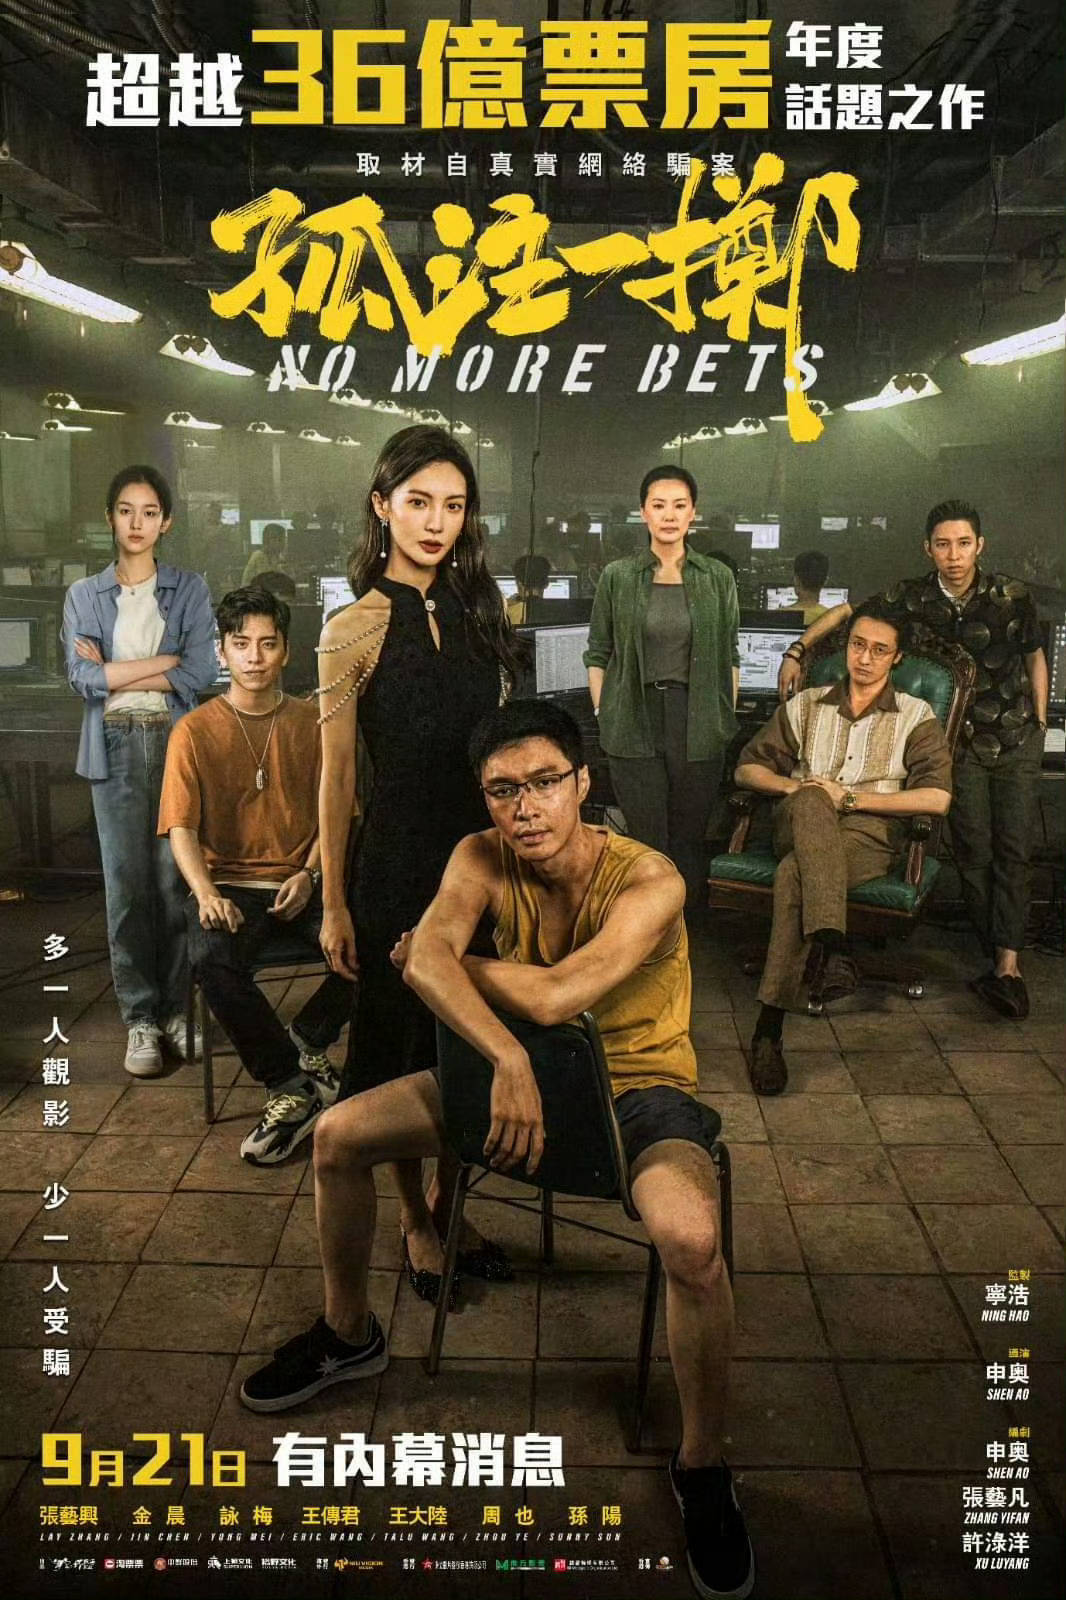 《孤注一掷》香港定档9月21日 内地上映32天累计票房破37亿跃居影史总榜第11位